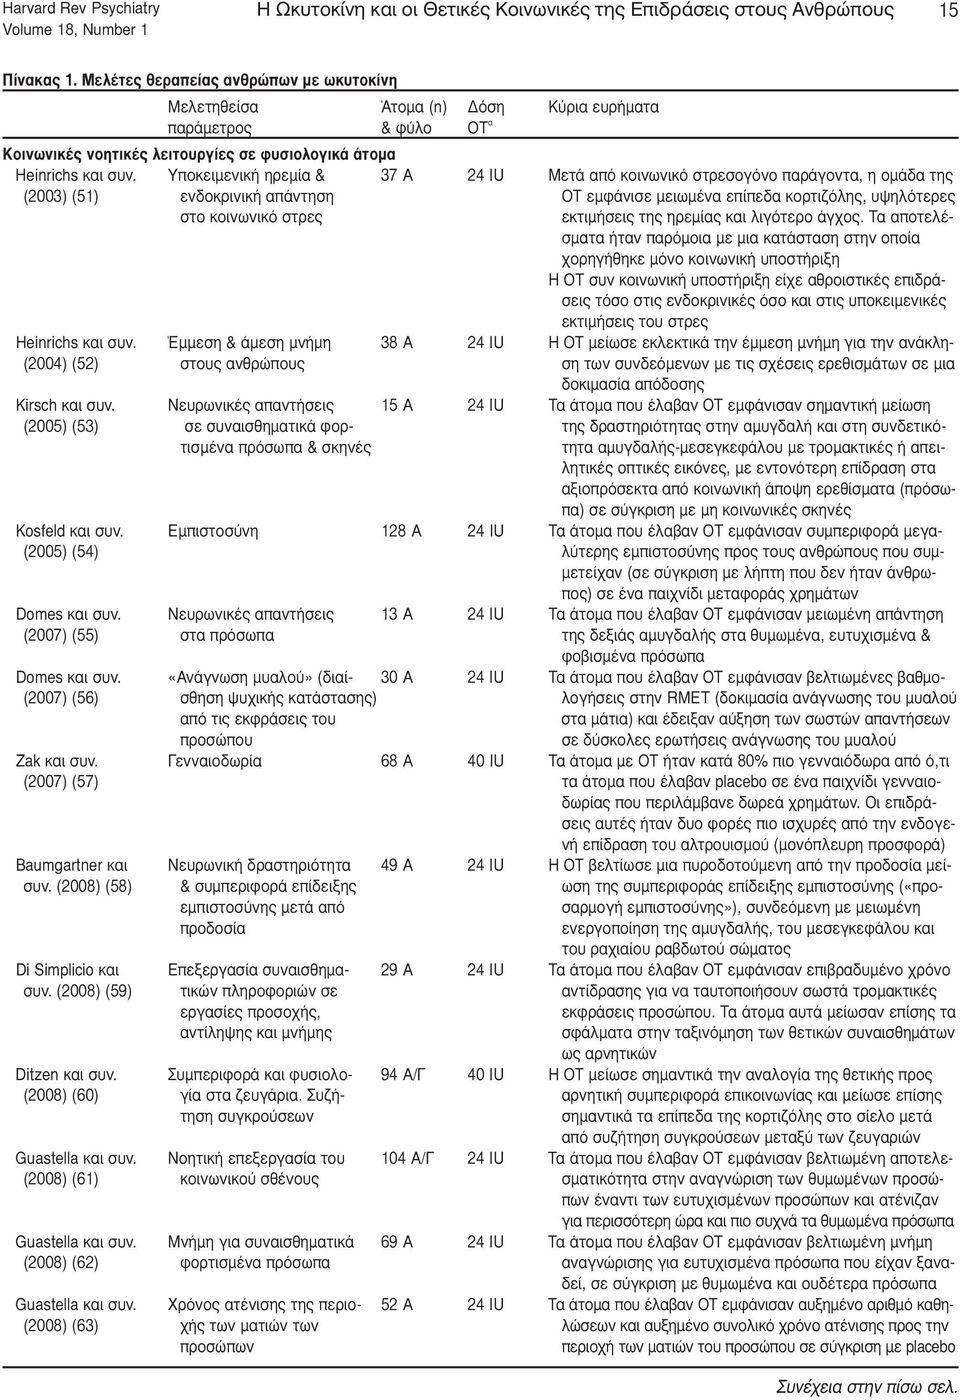 Υποκειμενική ηρεμία & 37 Α 24 IU Μετά από κοινωνικό στρεσογόνο παράγοντα, η ομάδα της (2003) (51) ενδοκρινική απάντηση ΟΤ εμφάνισε μειωμένα επίπεδα κορτιζόλης, υψηλότερες στο κοινωνικό στρες